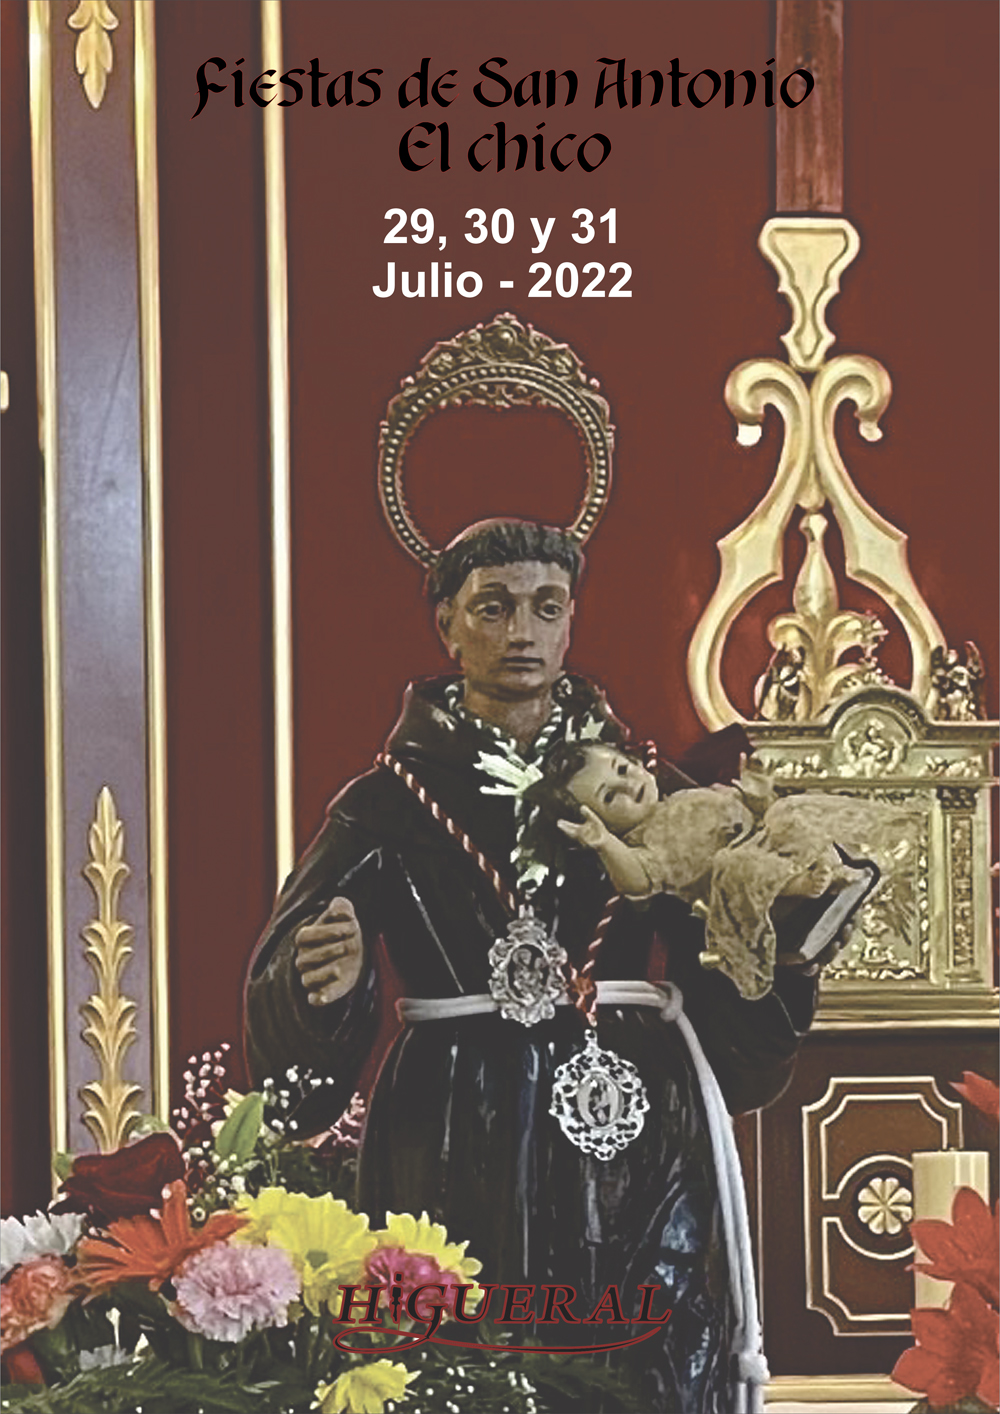 Imagen del Cartel de las Fiestas. Imagen de San Antonio "El Chico" al fondo.